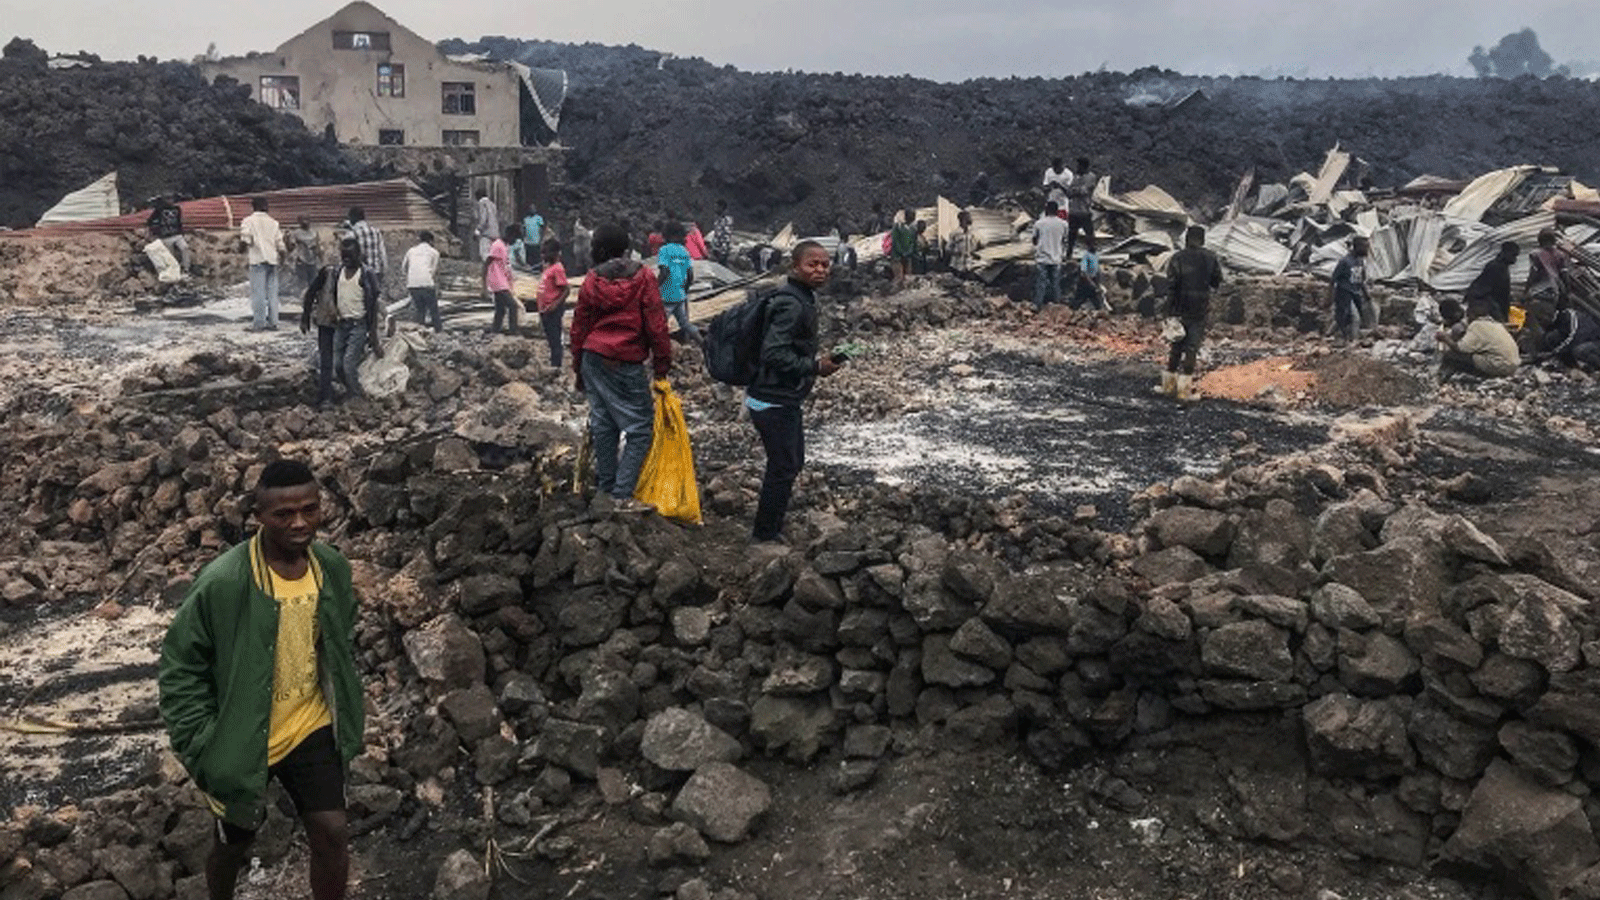 سكان يقفون بجوار مبانٍ مدمرة وبالقرب من الرماد المحترق في الصباح الباكر في غوما شرق جمهورية الكونغو الديمقراطية